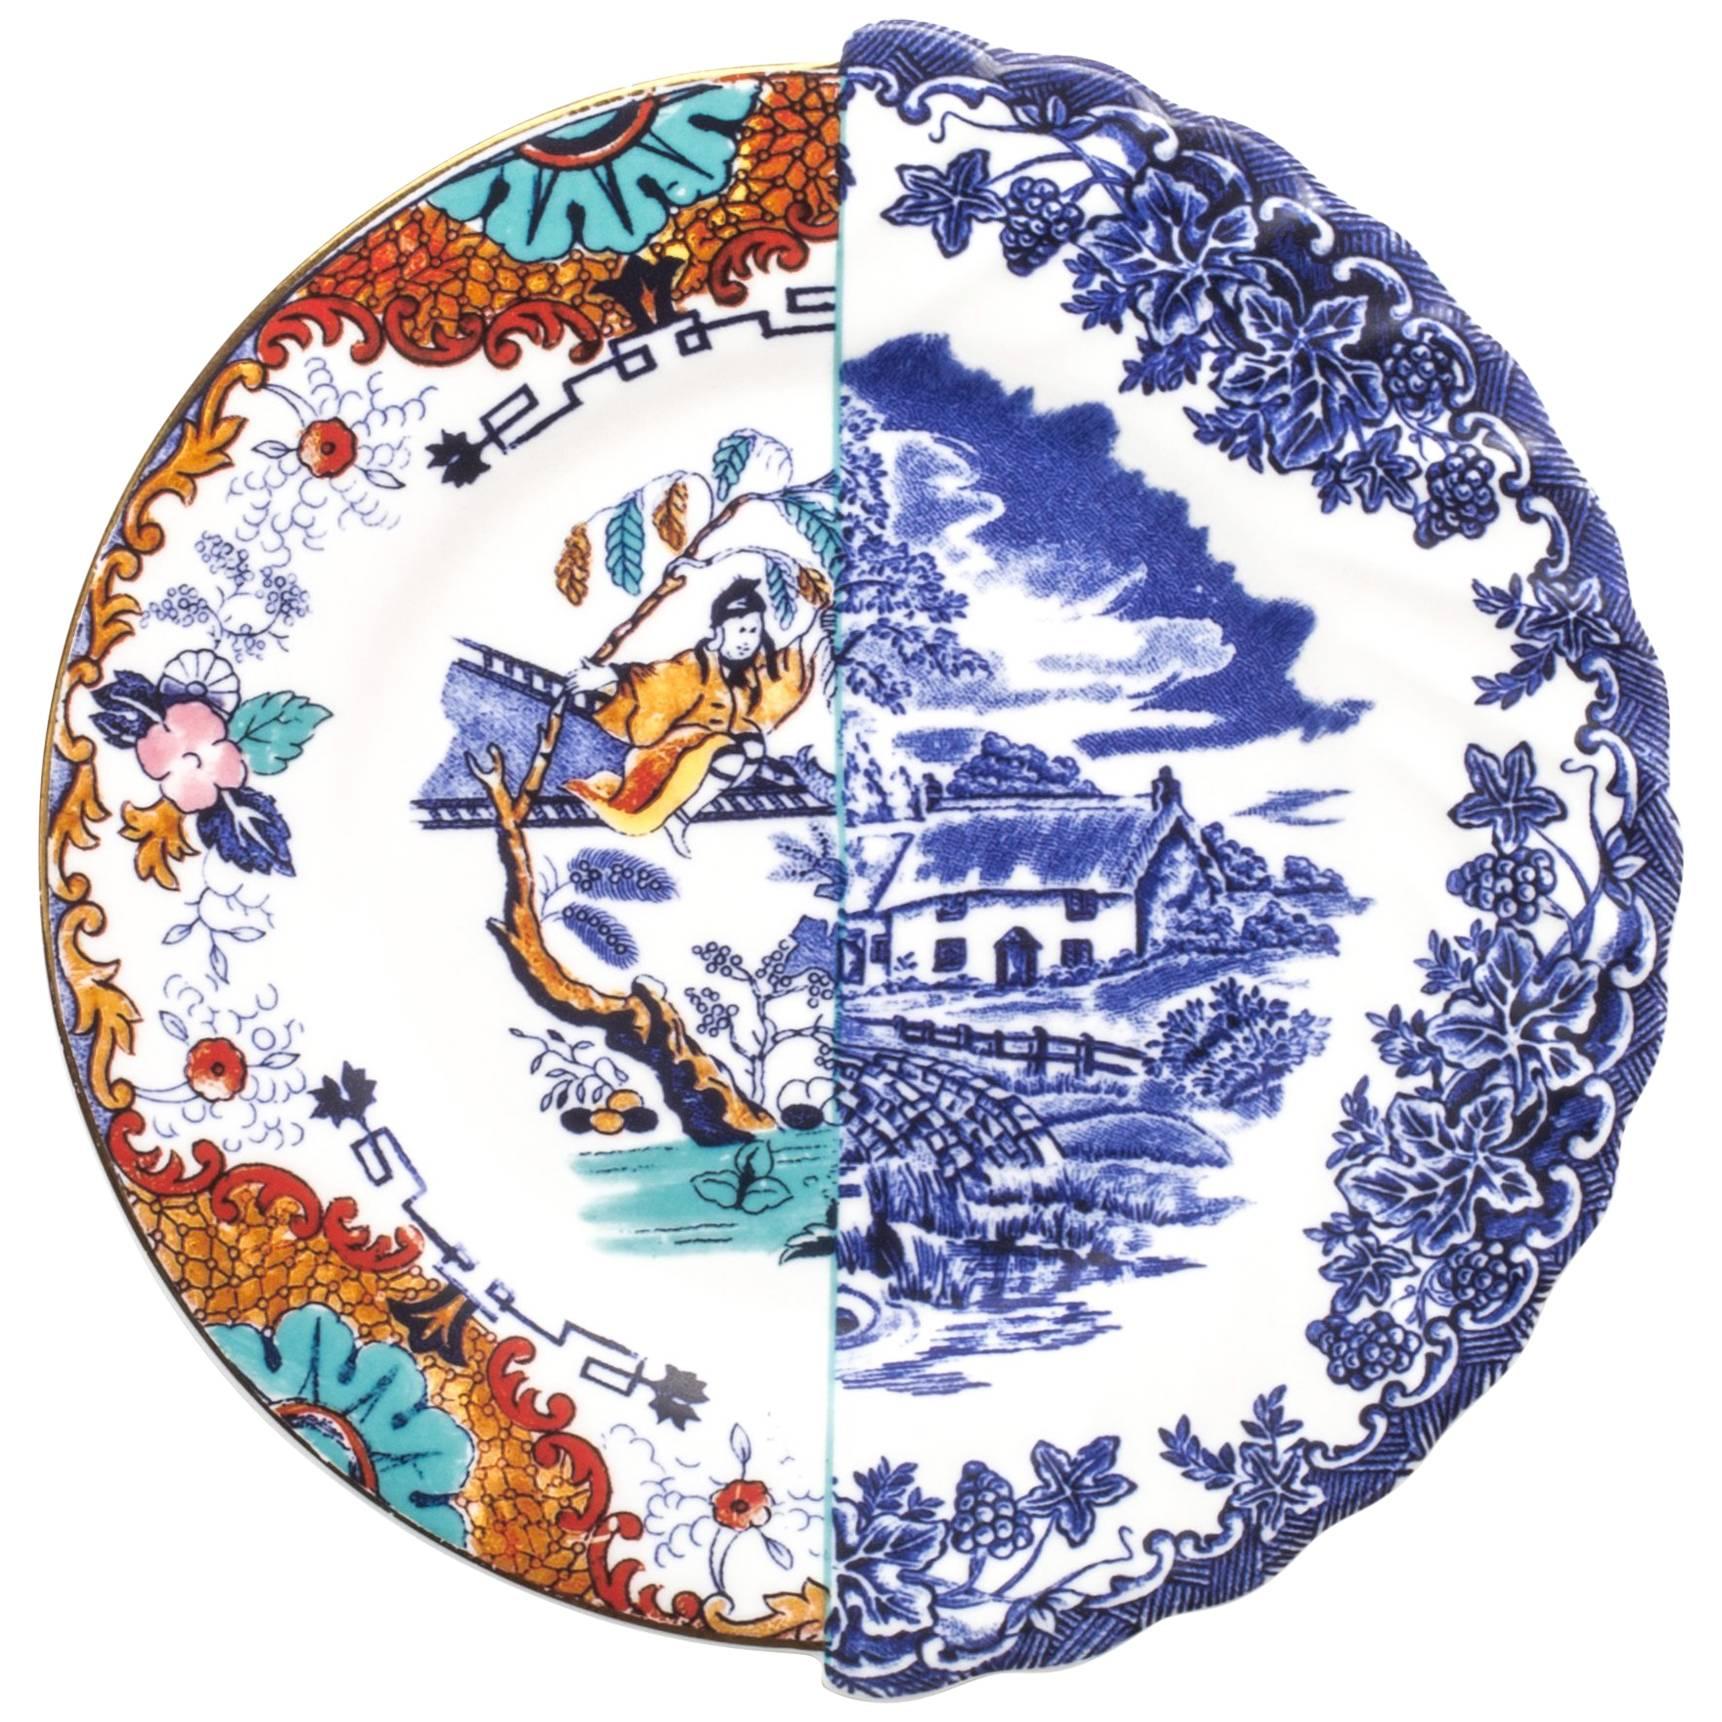 Seletti "Hybrid-Valdrada" Fruit Plate in Porcelain For Sale